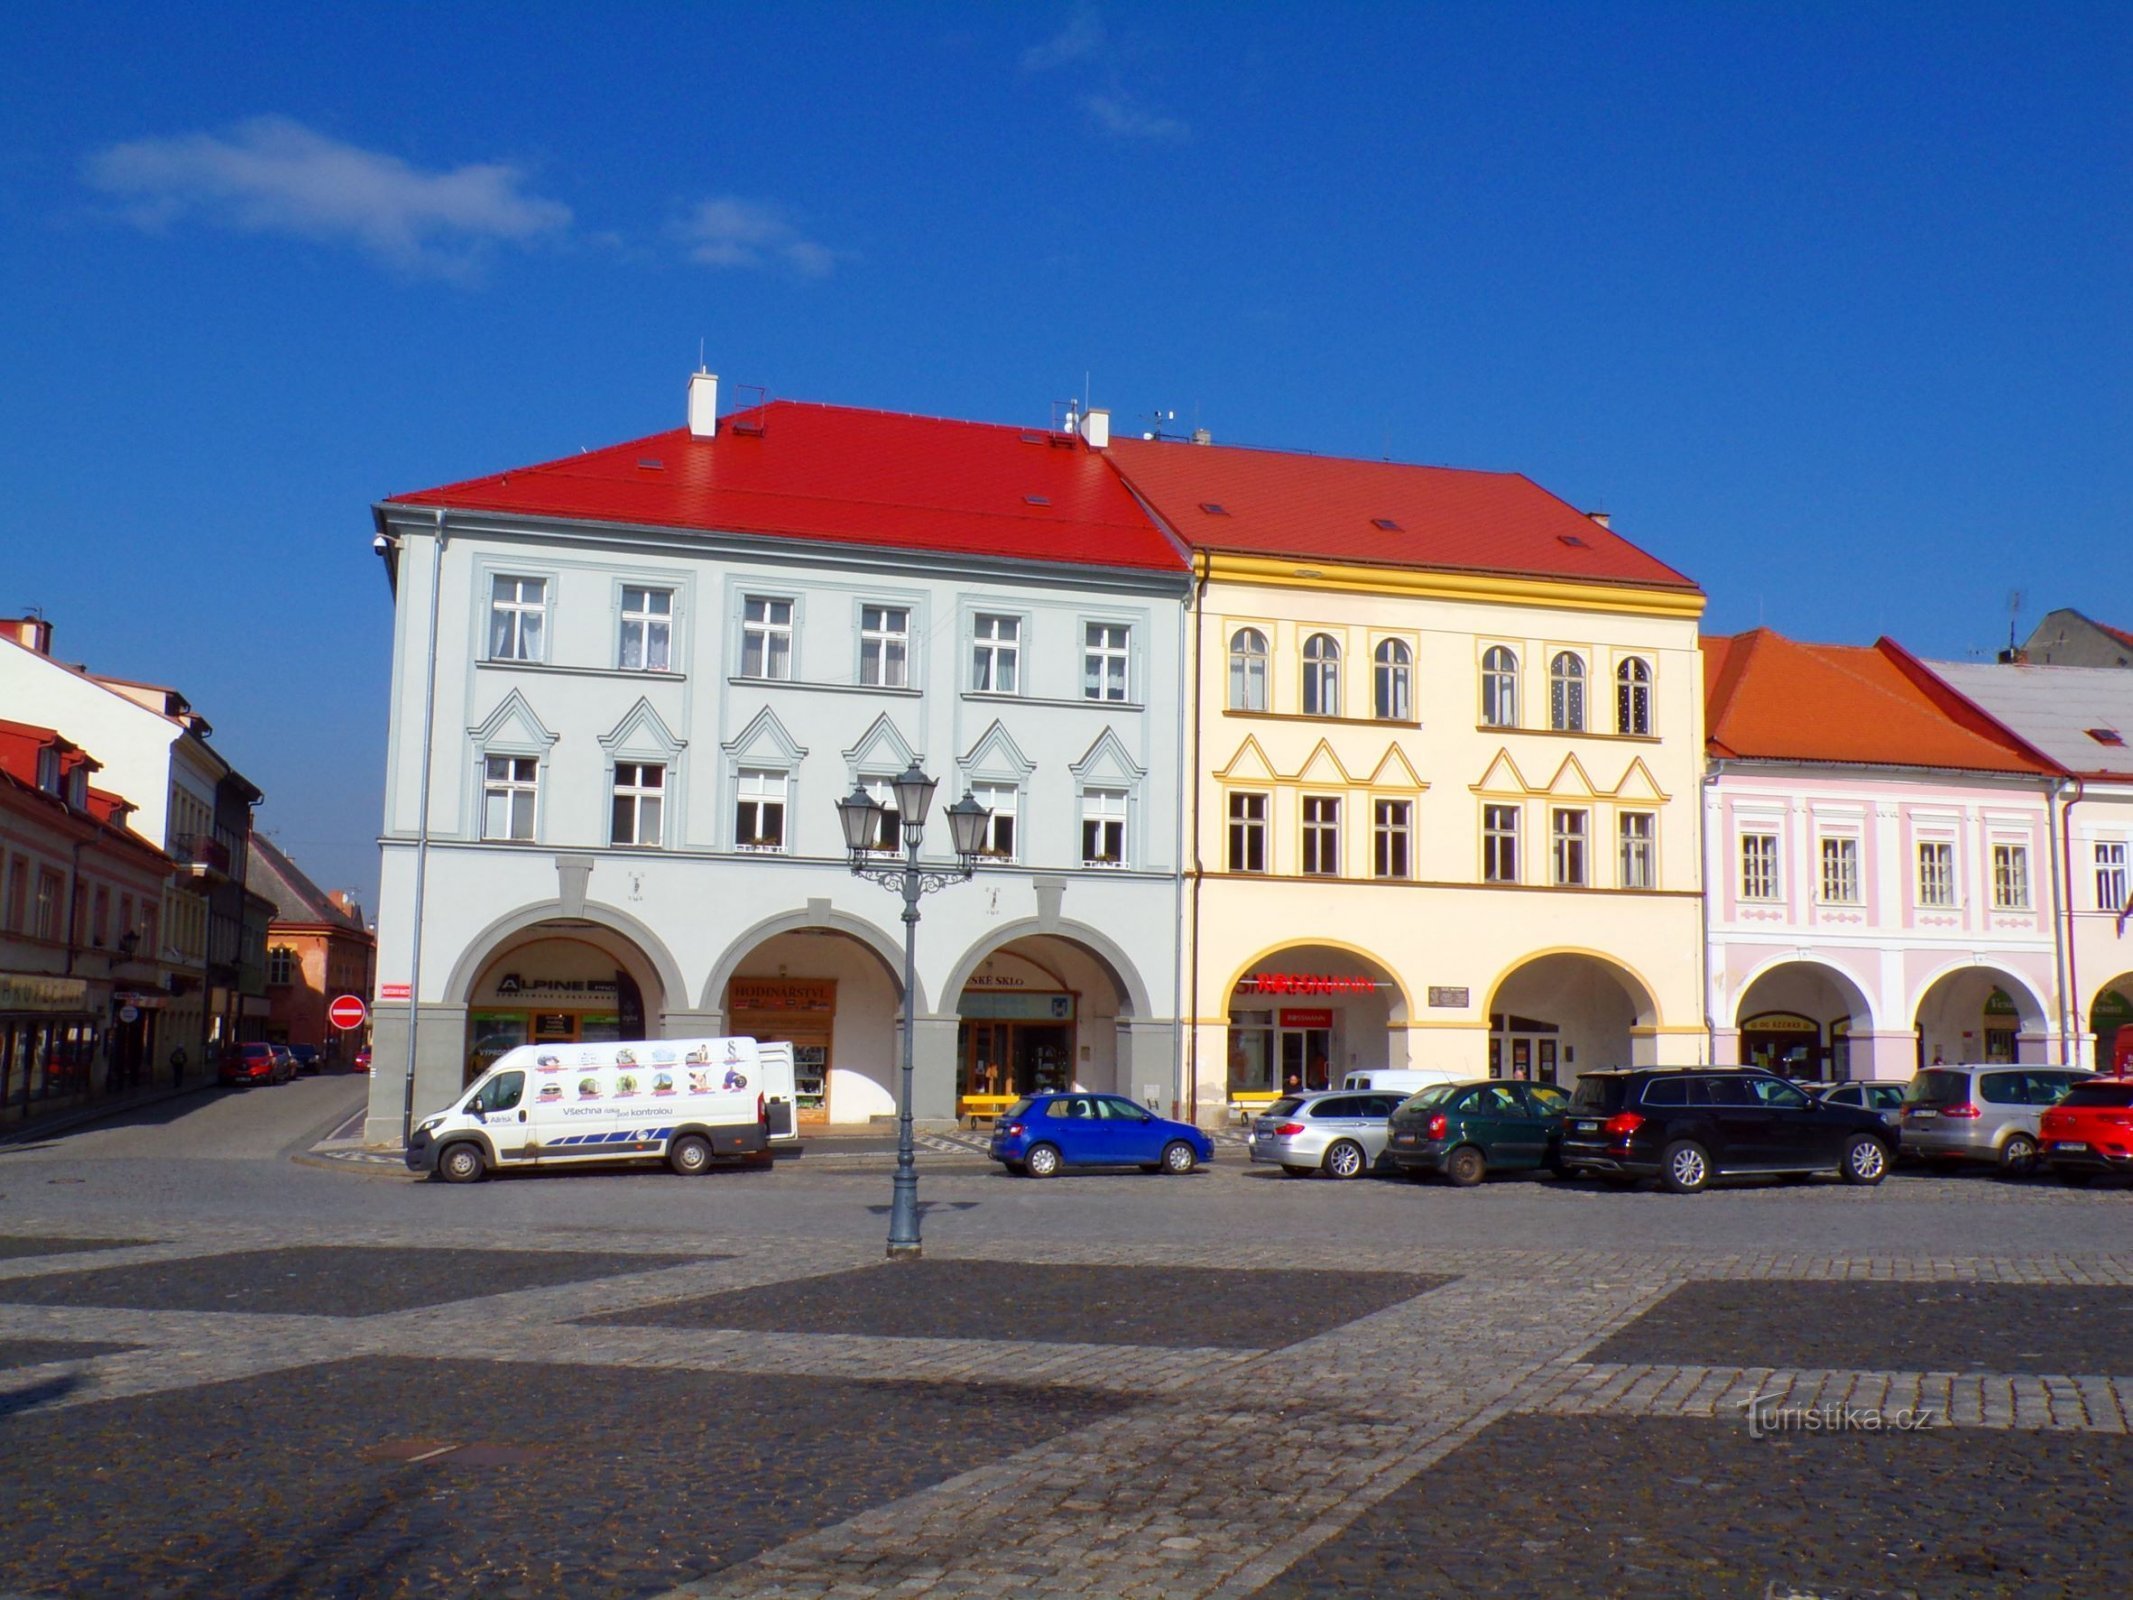 Palackého št. 73 in Valdštejnovo náměstí št. 74 (Jičín, 3.3.2022. XNUMX. XNUMX)